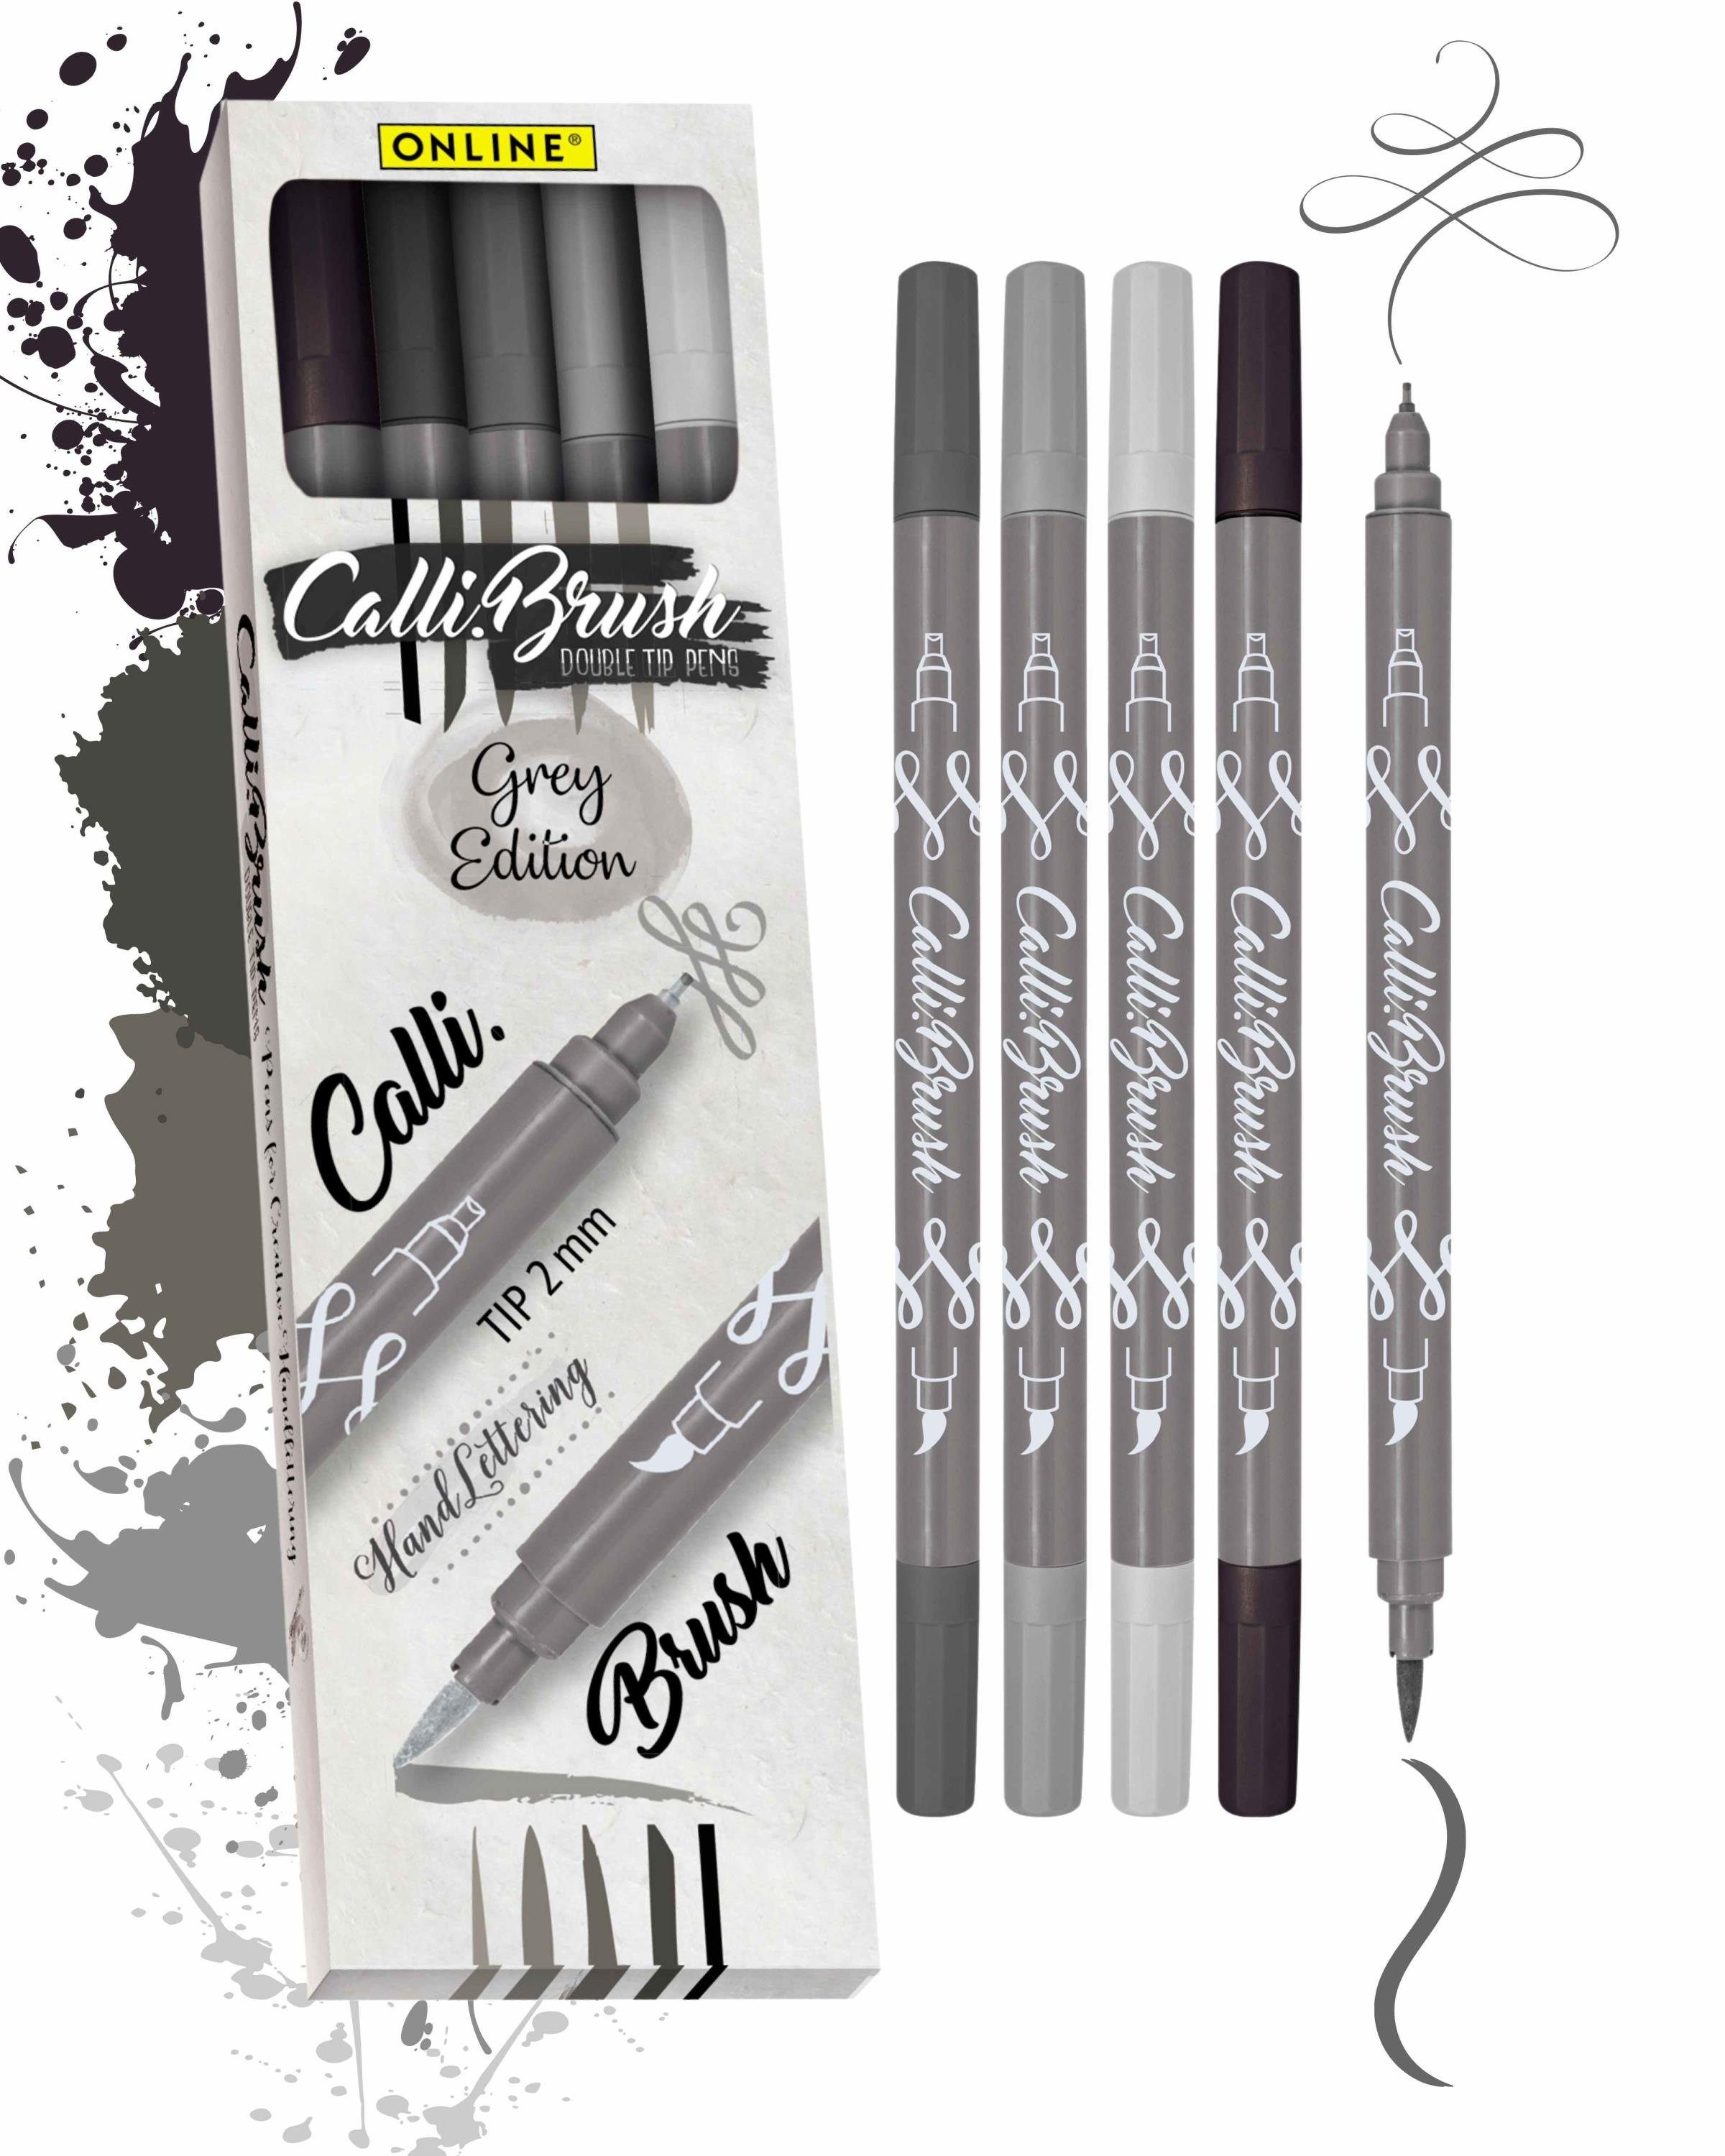 Grey Pens, verschiedene Calli.Brush, 5x Pen Brush Fineliner Online bunte Set, Stifte Spitzen Handlettering